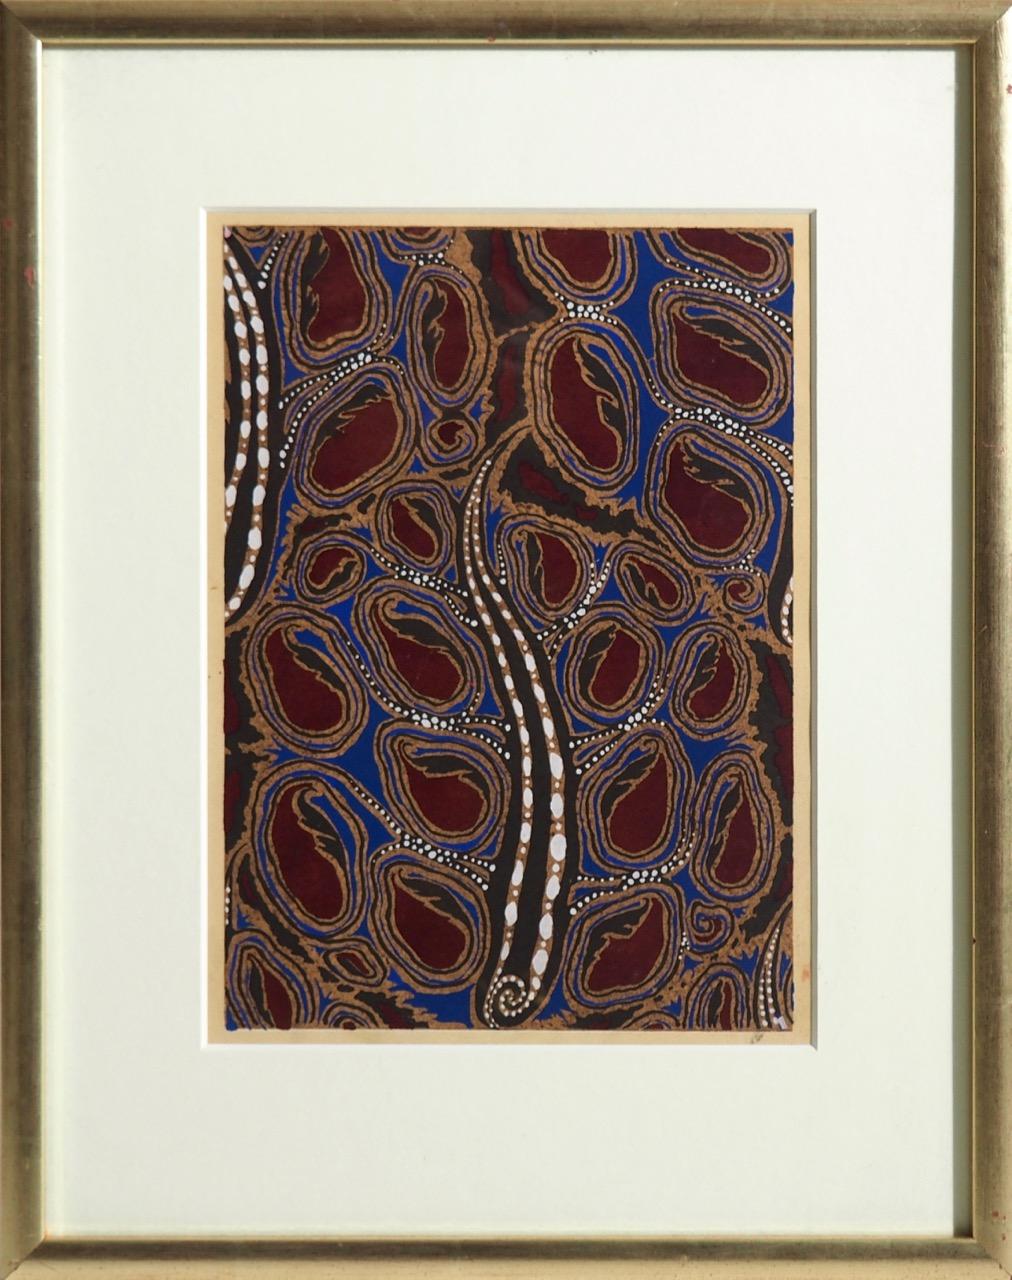 Trois belles gravures sur bois dans le style fauviste (défendu par Matisse), vers 1910. Très décoratif !
Mesures : H. 30, L. 21 cm.
H. 11.8, W. 8.2 in.